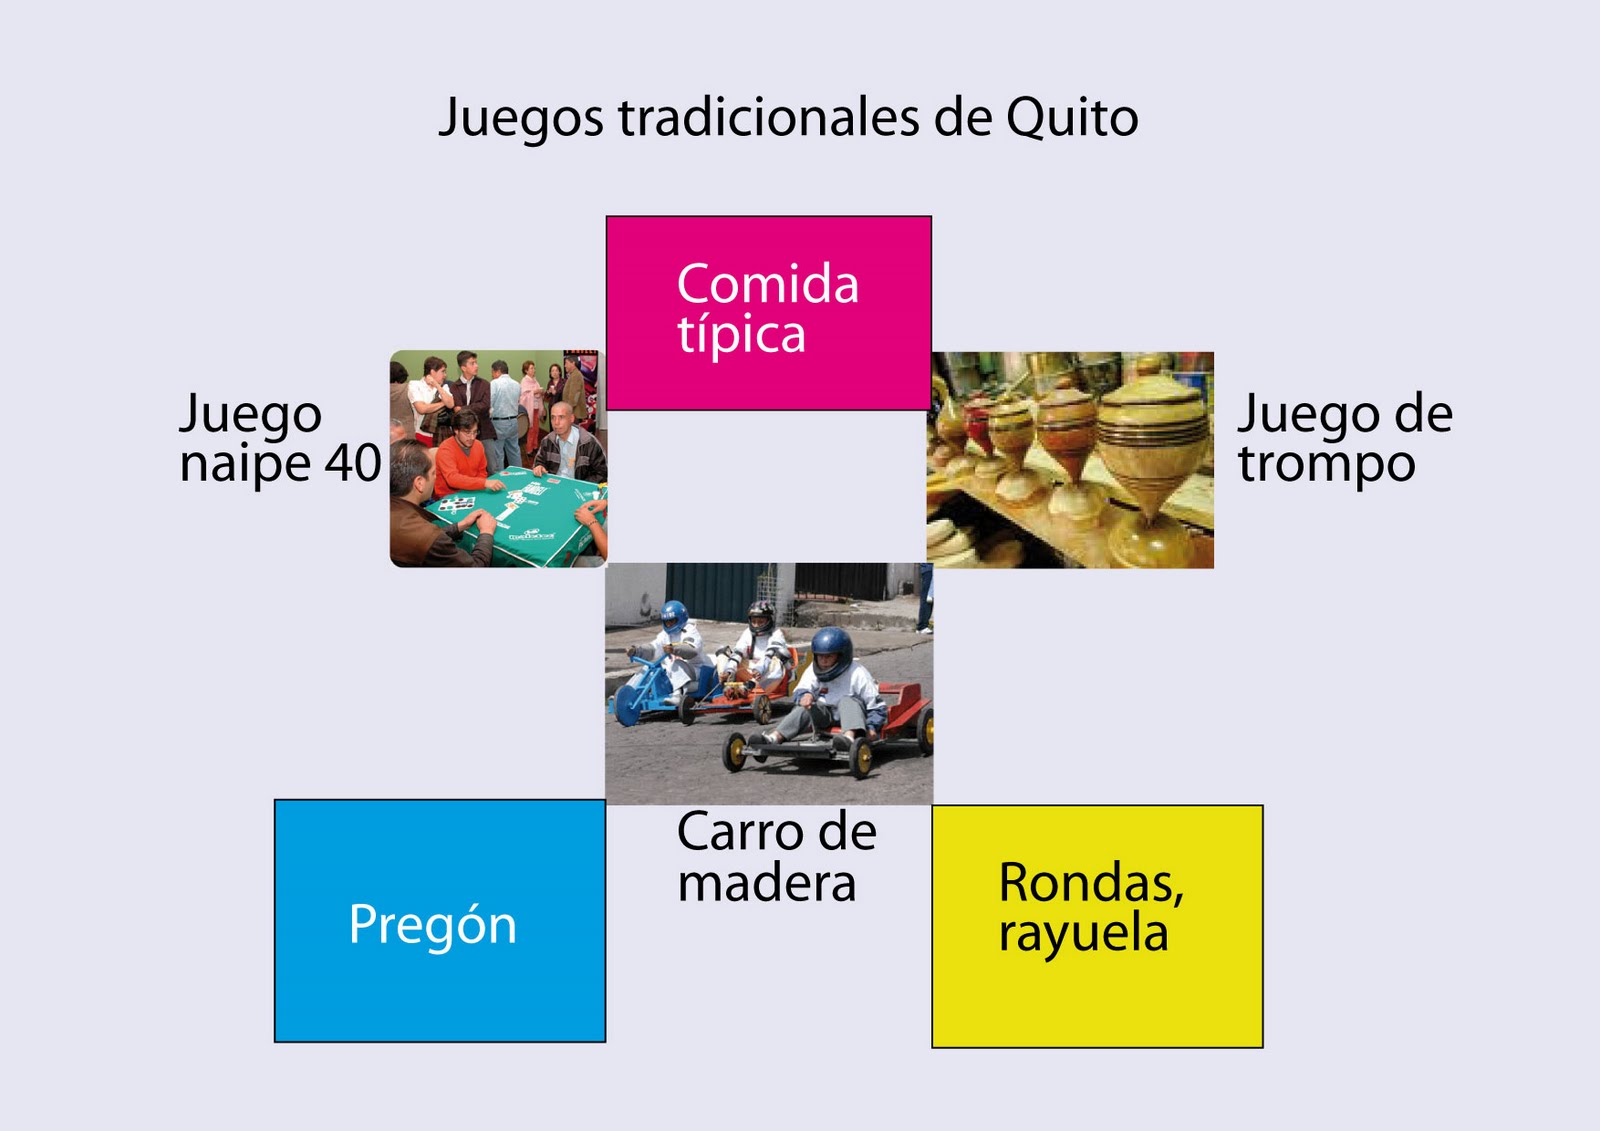 Taller de Diseño (USFQ): Juegos tradicionales de Quito